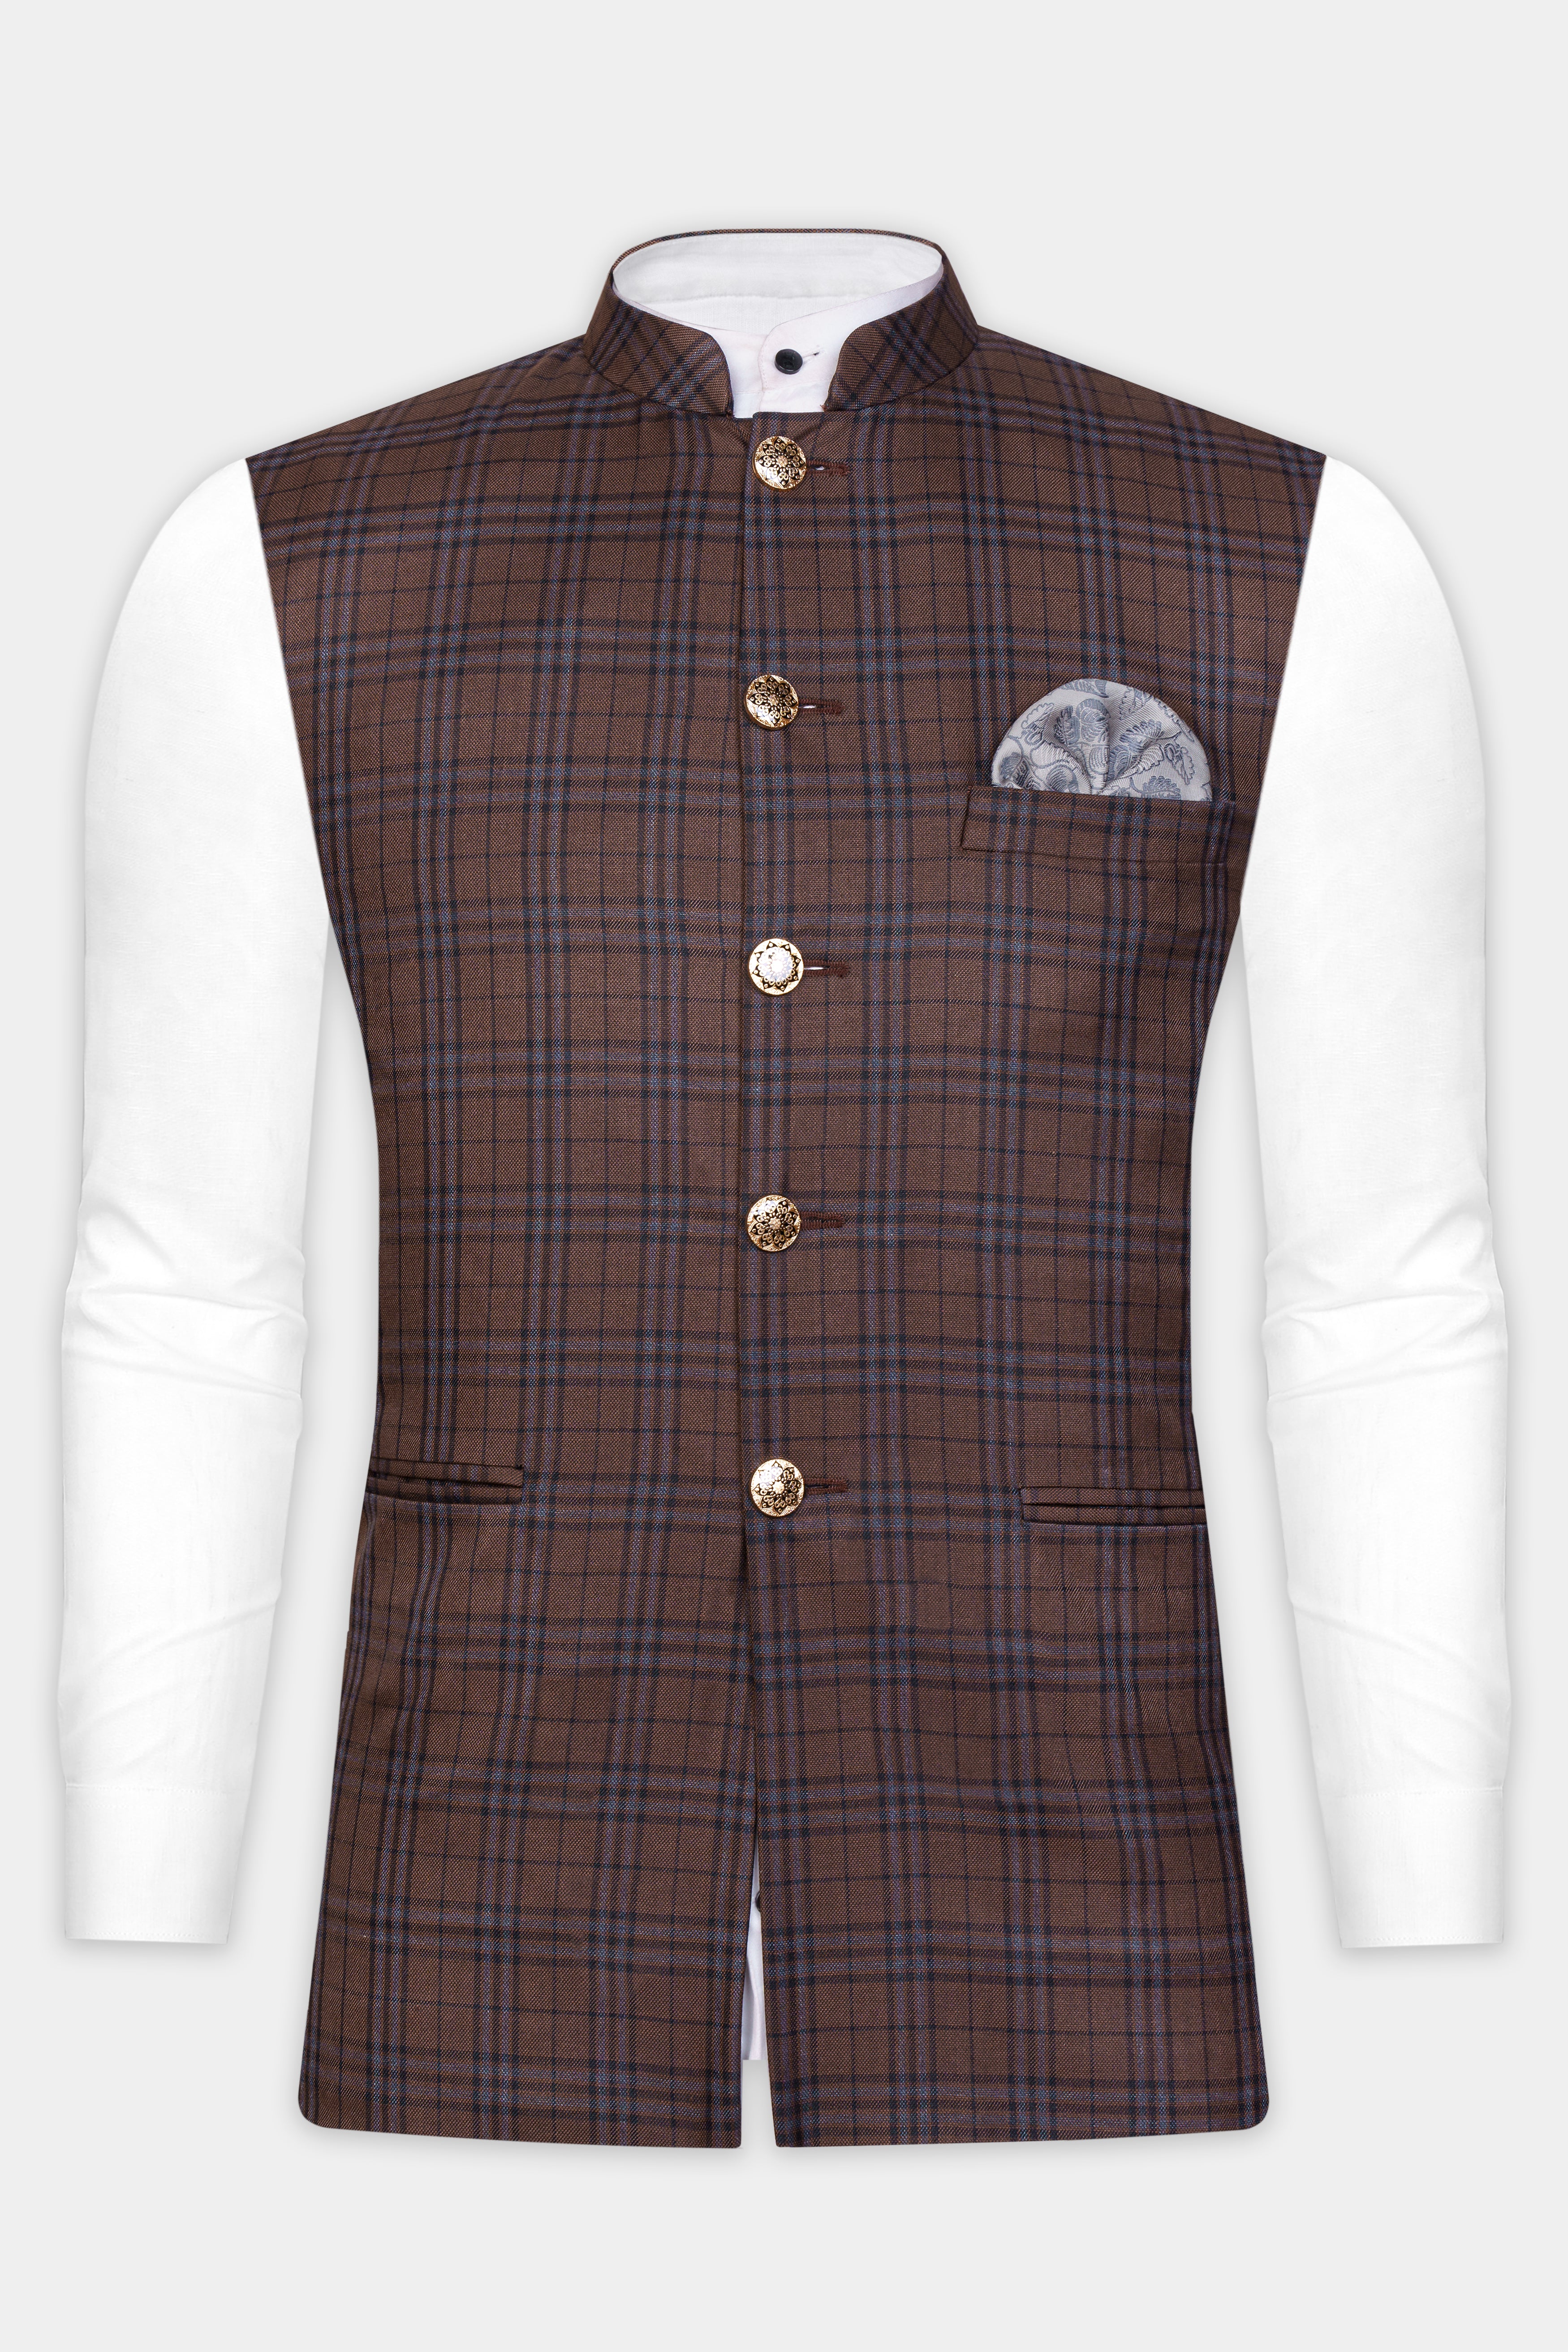 The Best Ways to Wear a Nehru Jacket to a Wedding